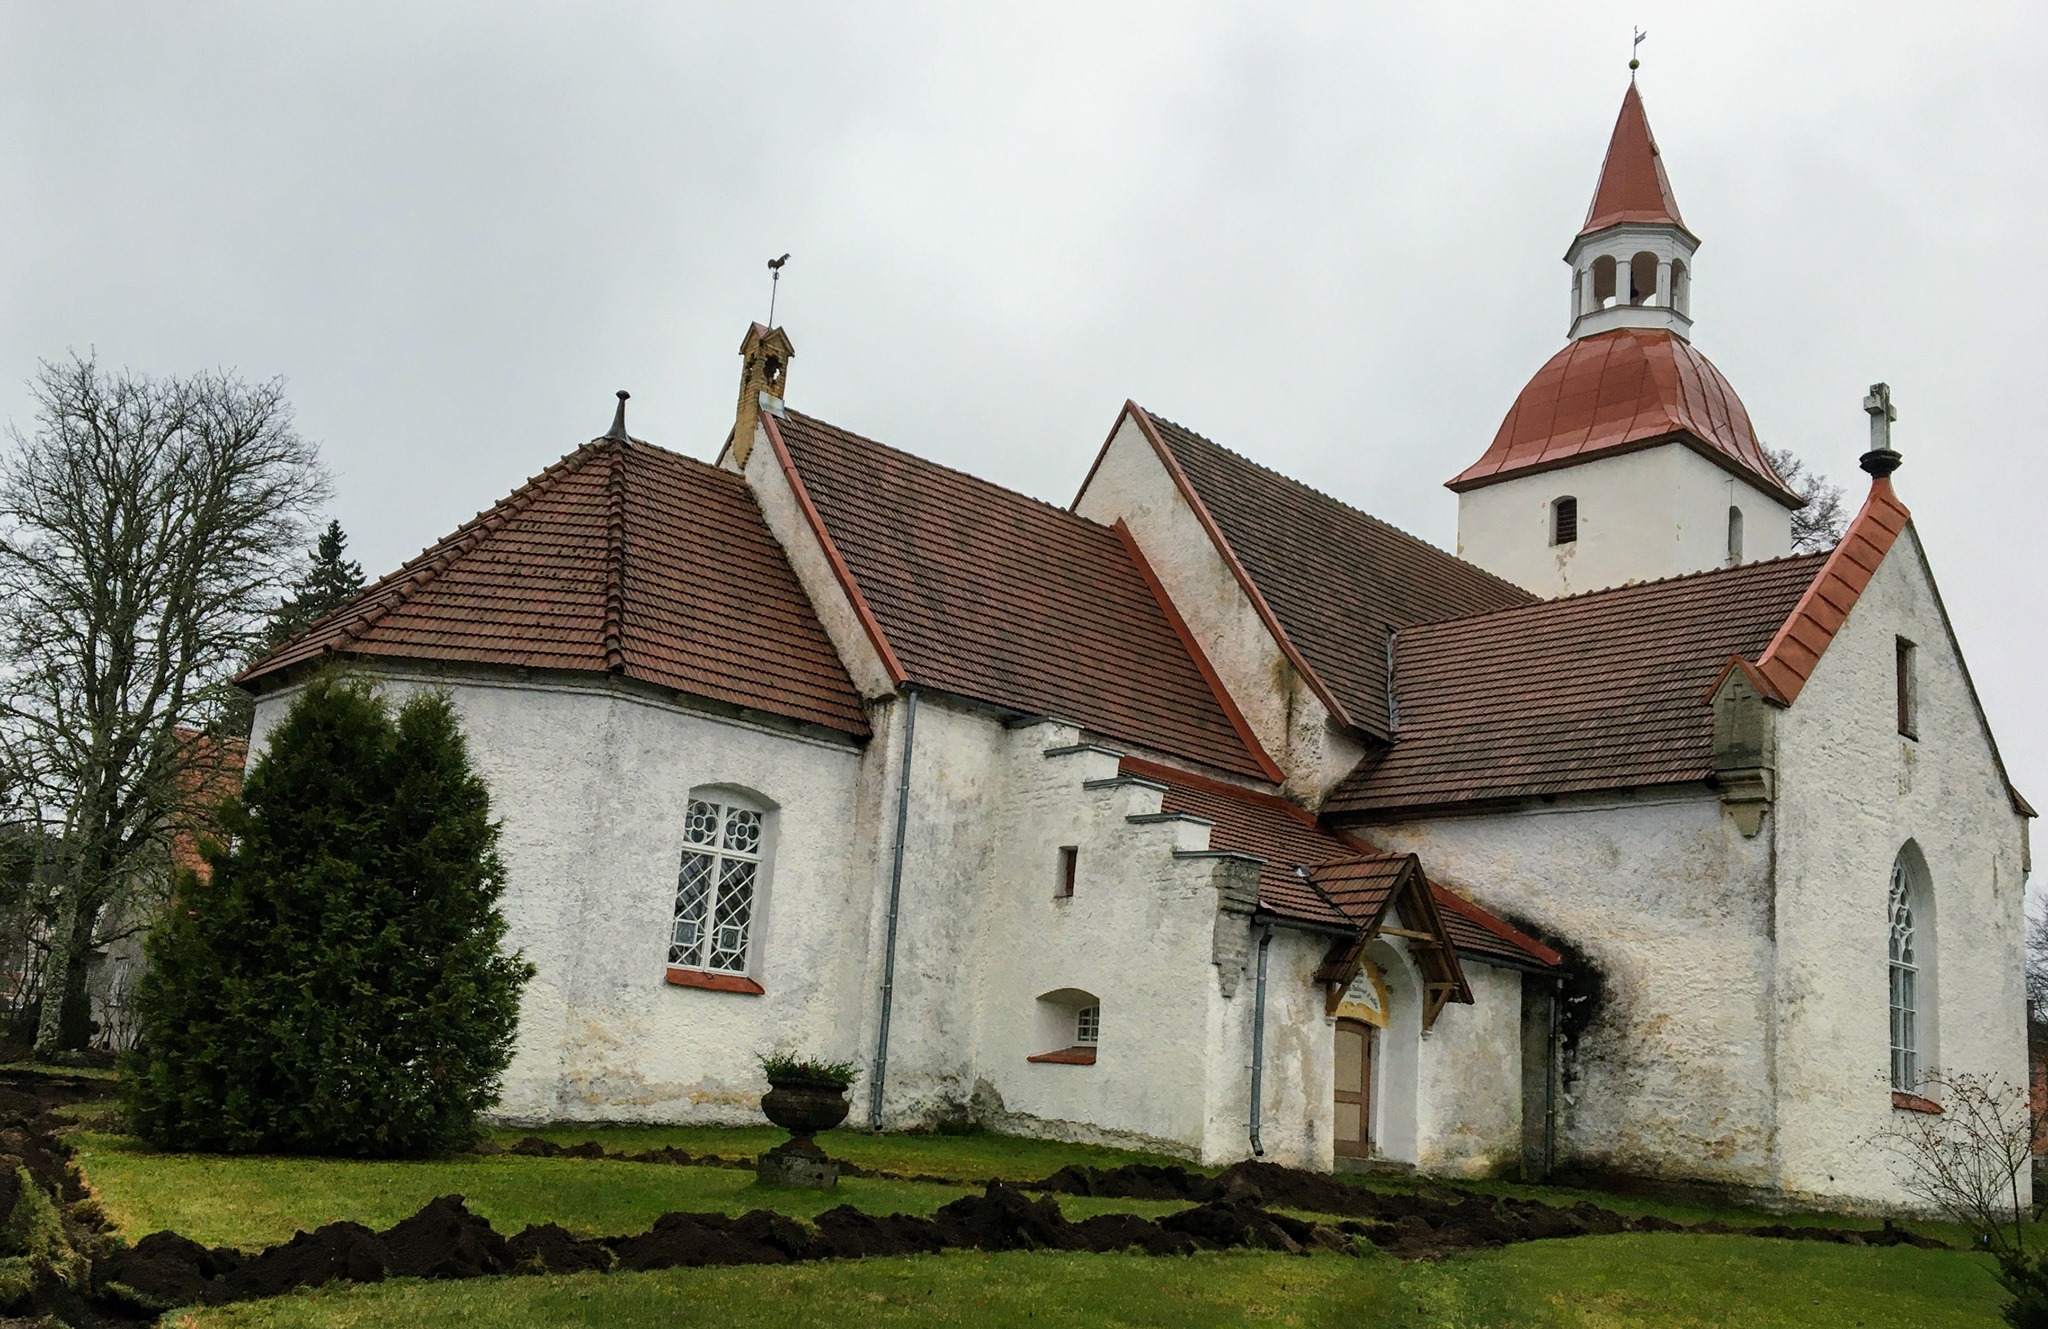 Vanha Kuusalun Pyhän Laurentiuksen valkea kivikirkko, jossa punaiset kattotiilet